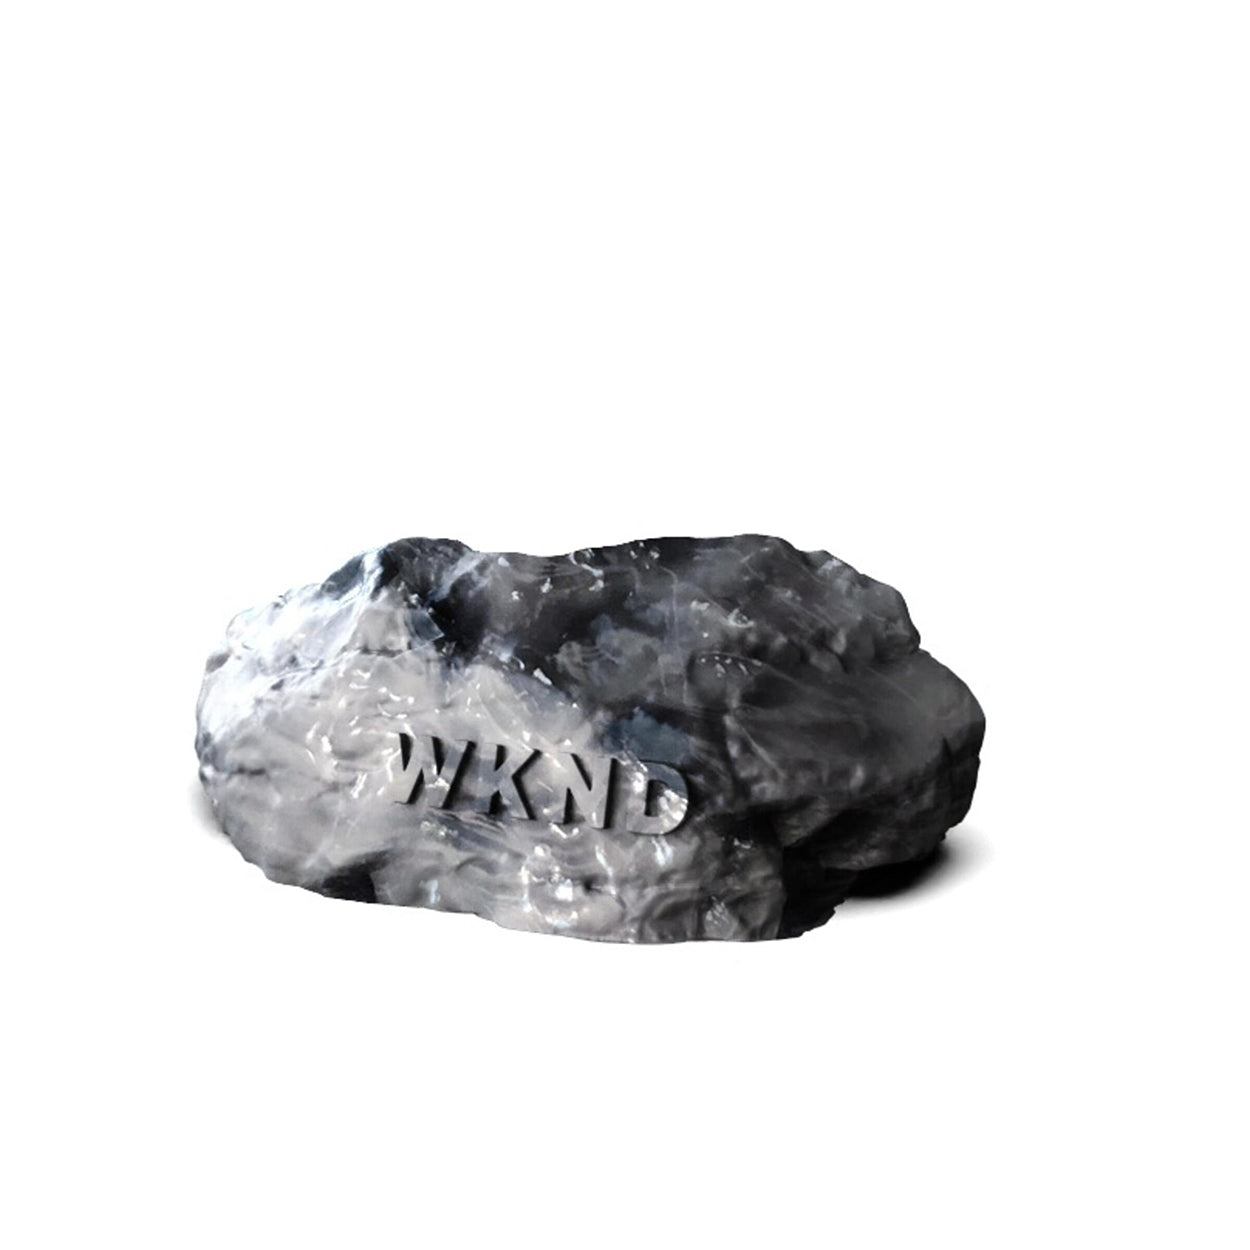 WKND Rock Wax